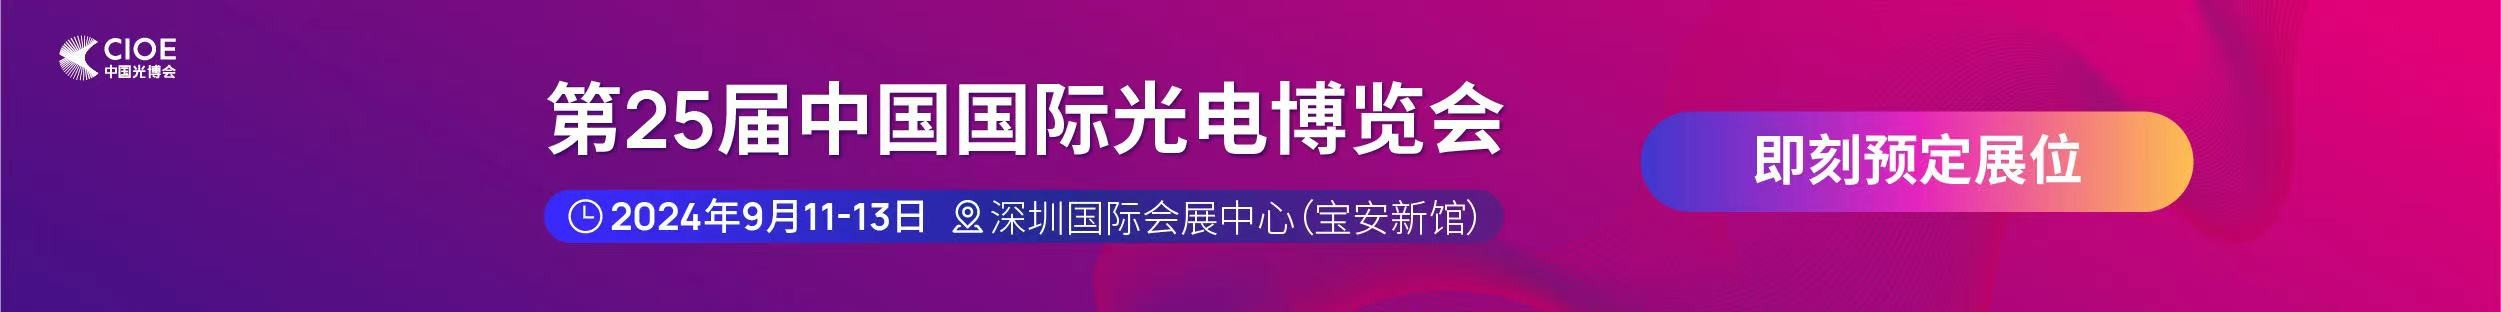 澳门新葡萄新京8883not公司受邀参展第25届中国国际光电博览会